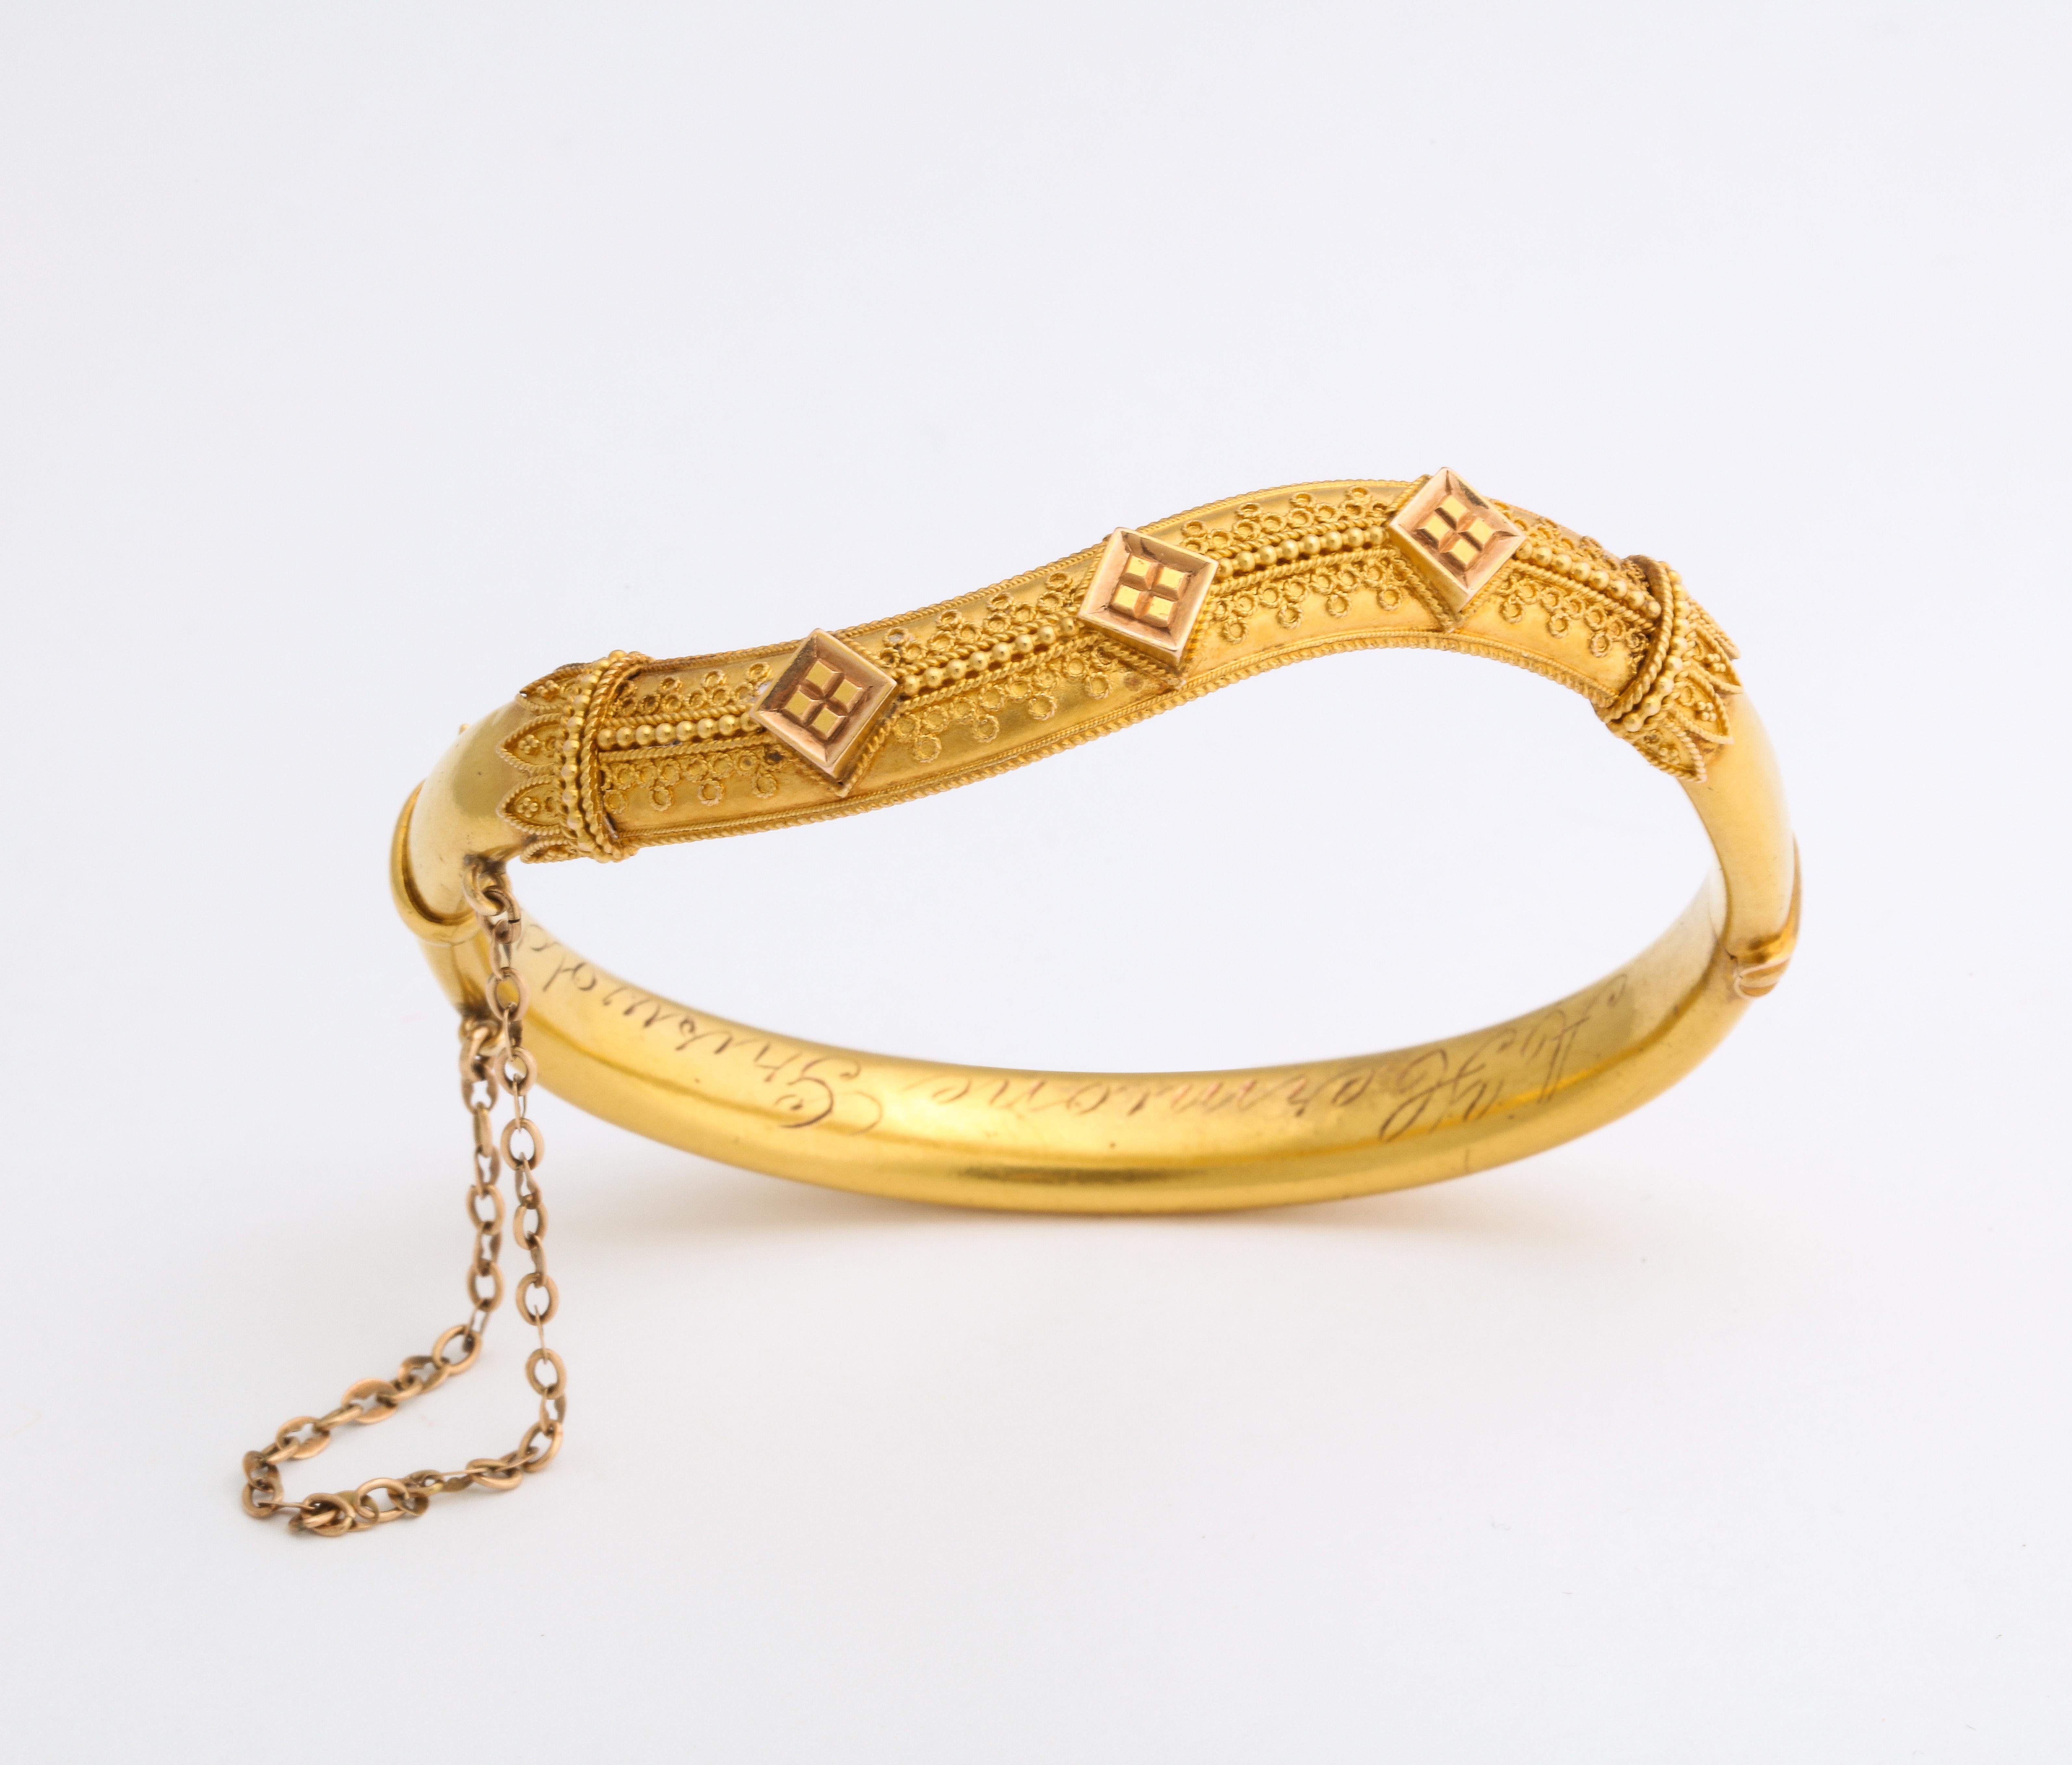 gold er bracelet design